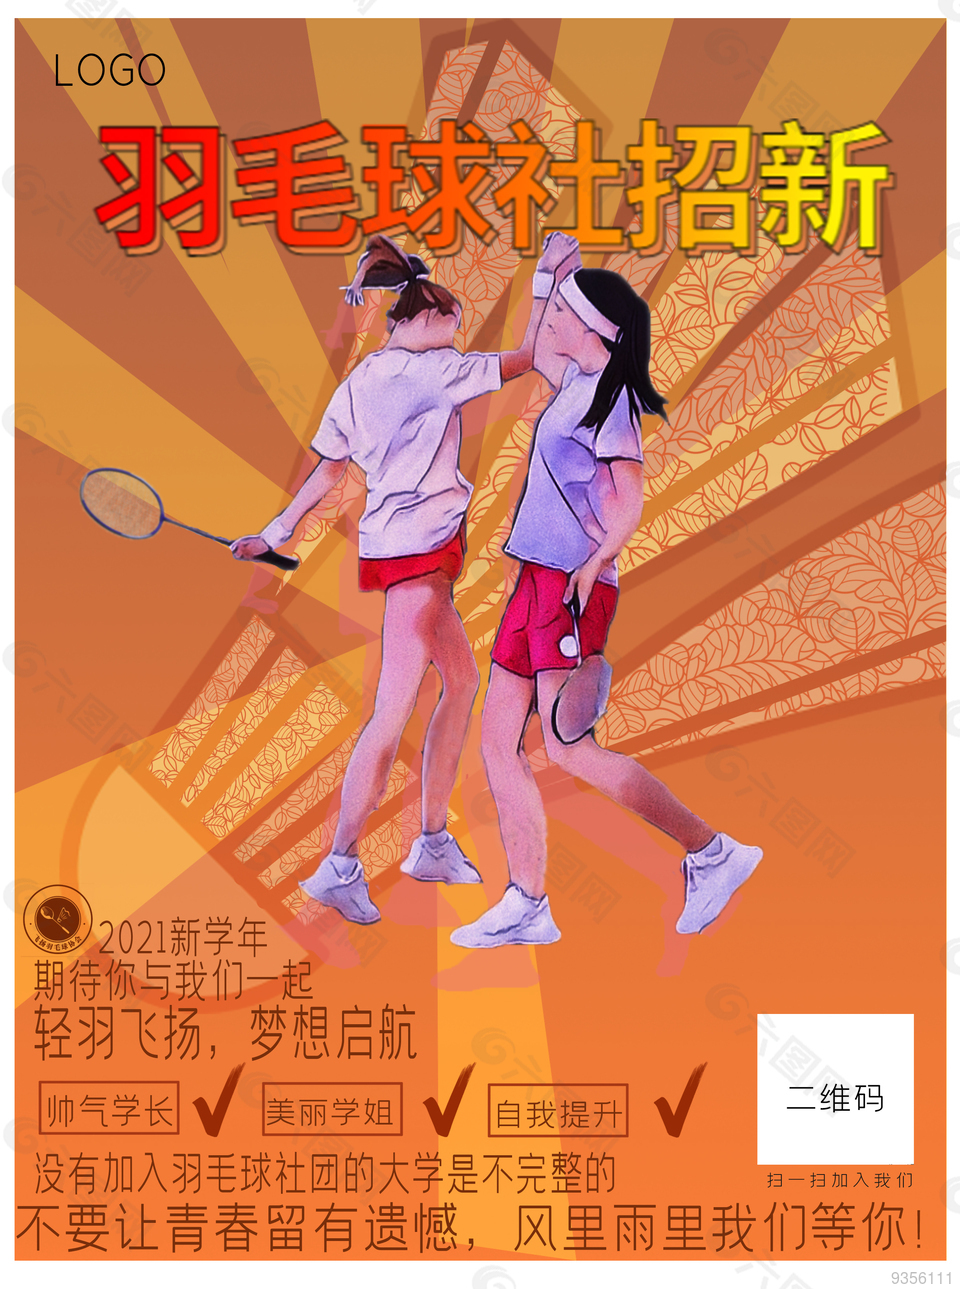 羽毛球社团招新 羽毛球比赛海报